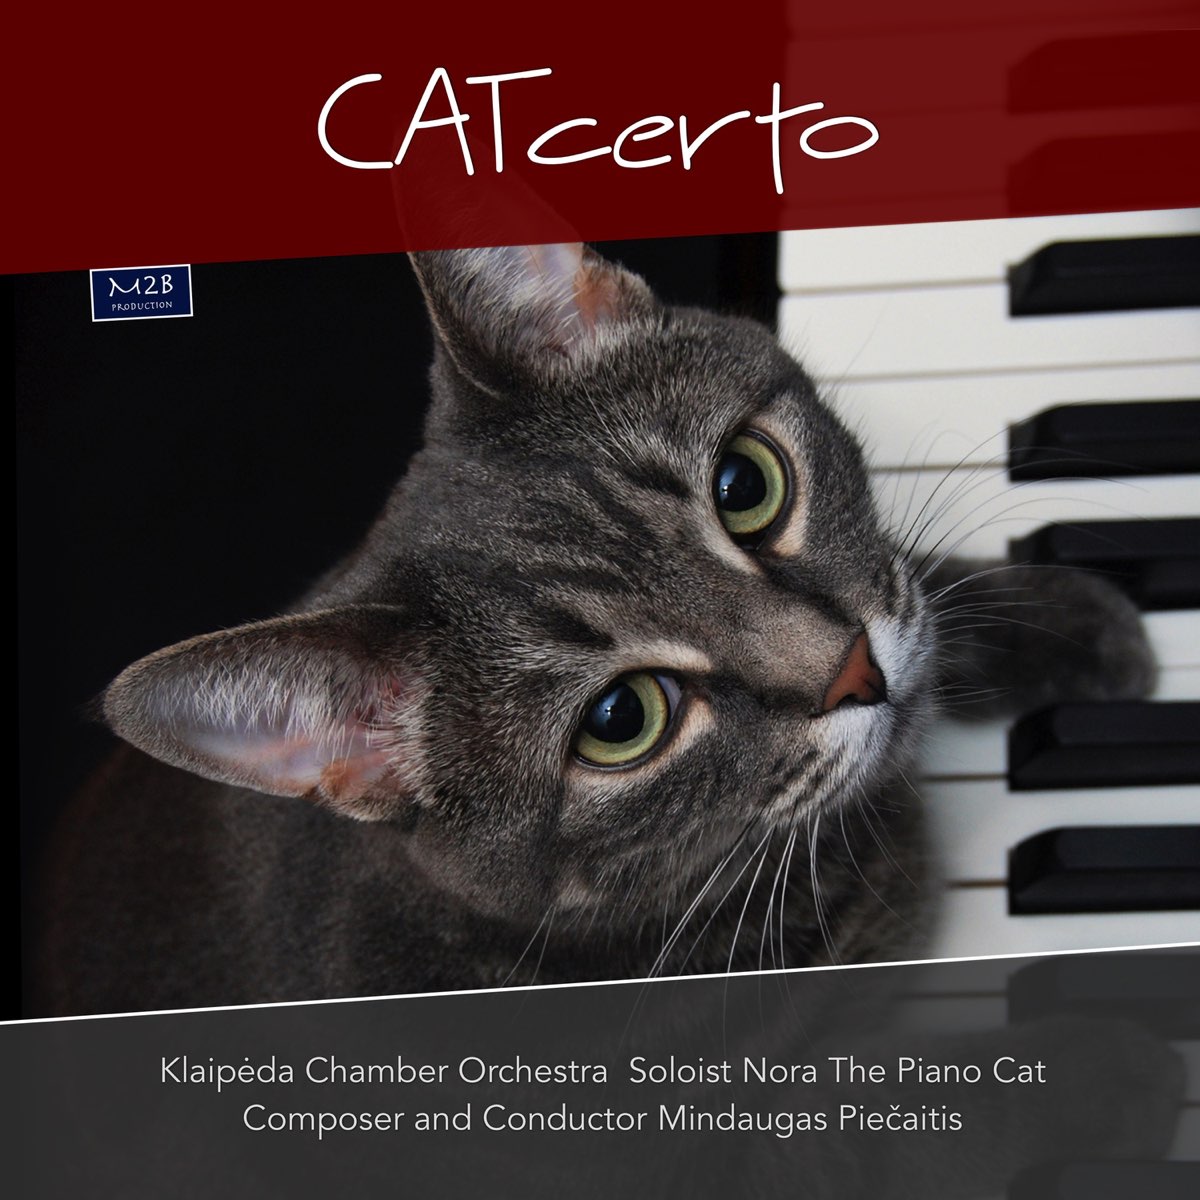 CATcerto - Single – Album par Nora The Piano Cat & Mindaugas Piecaitis –  Apple Music